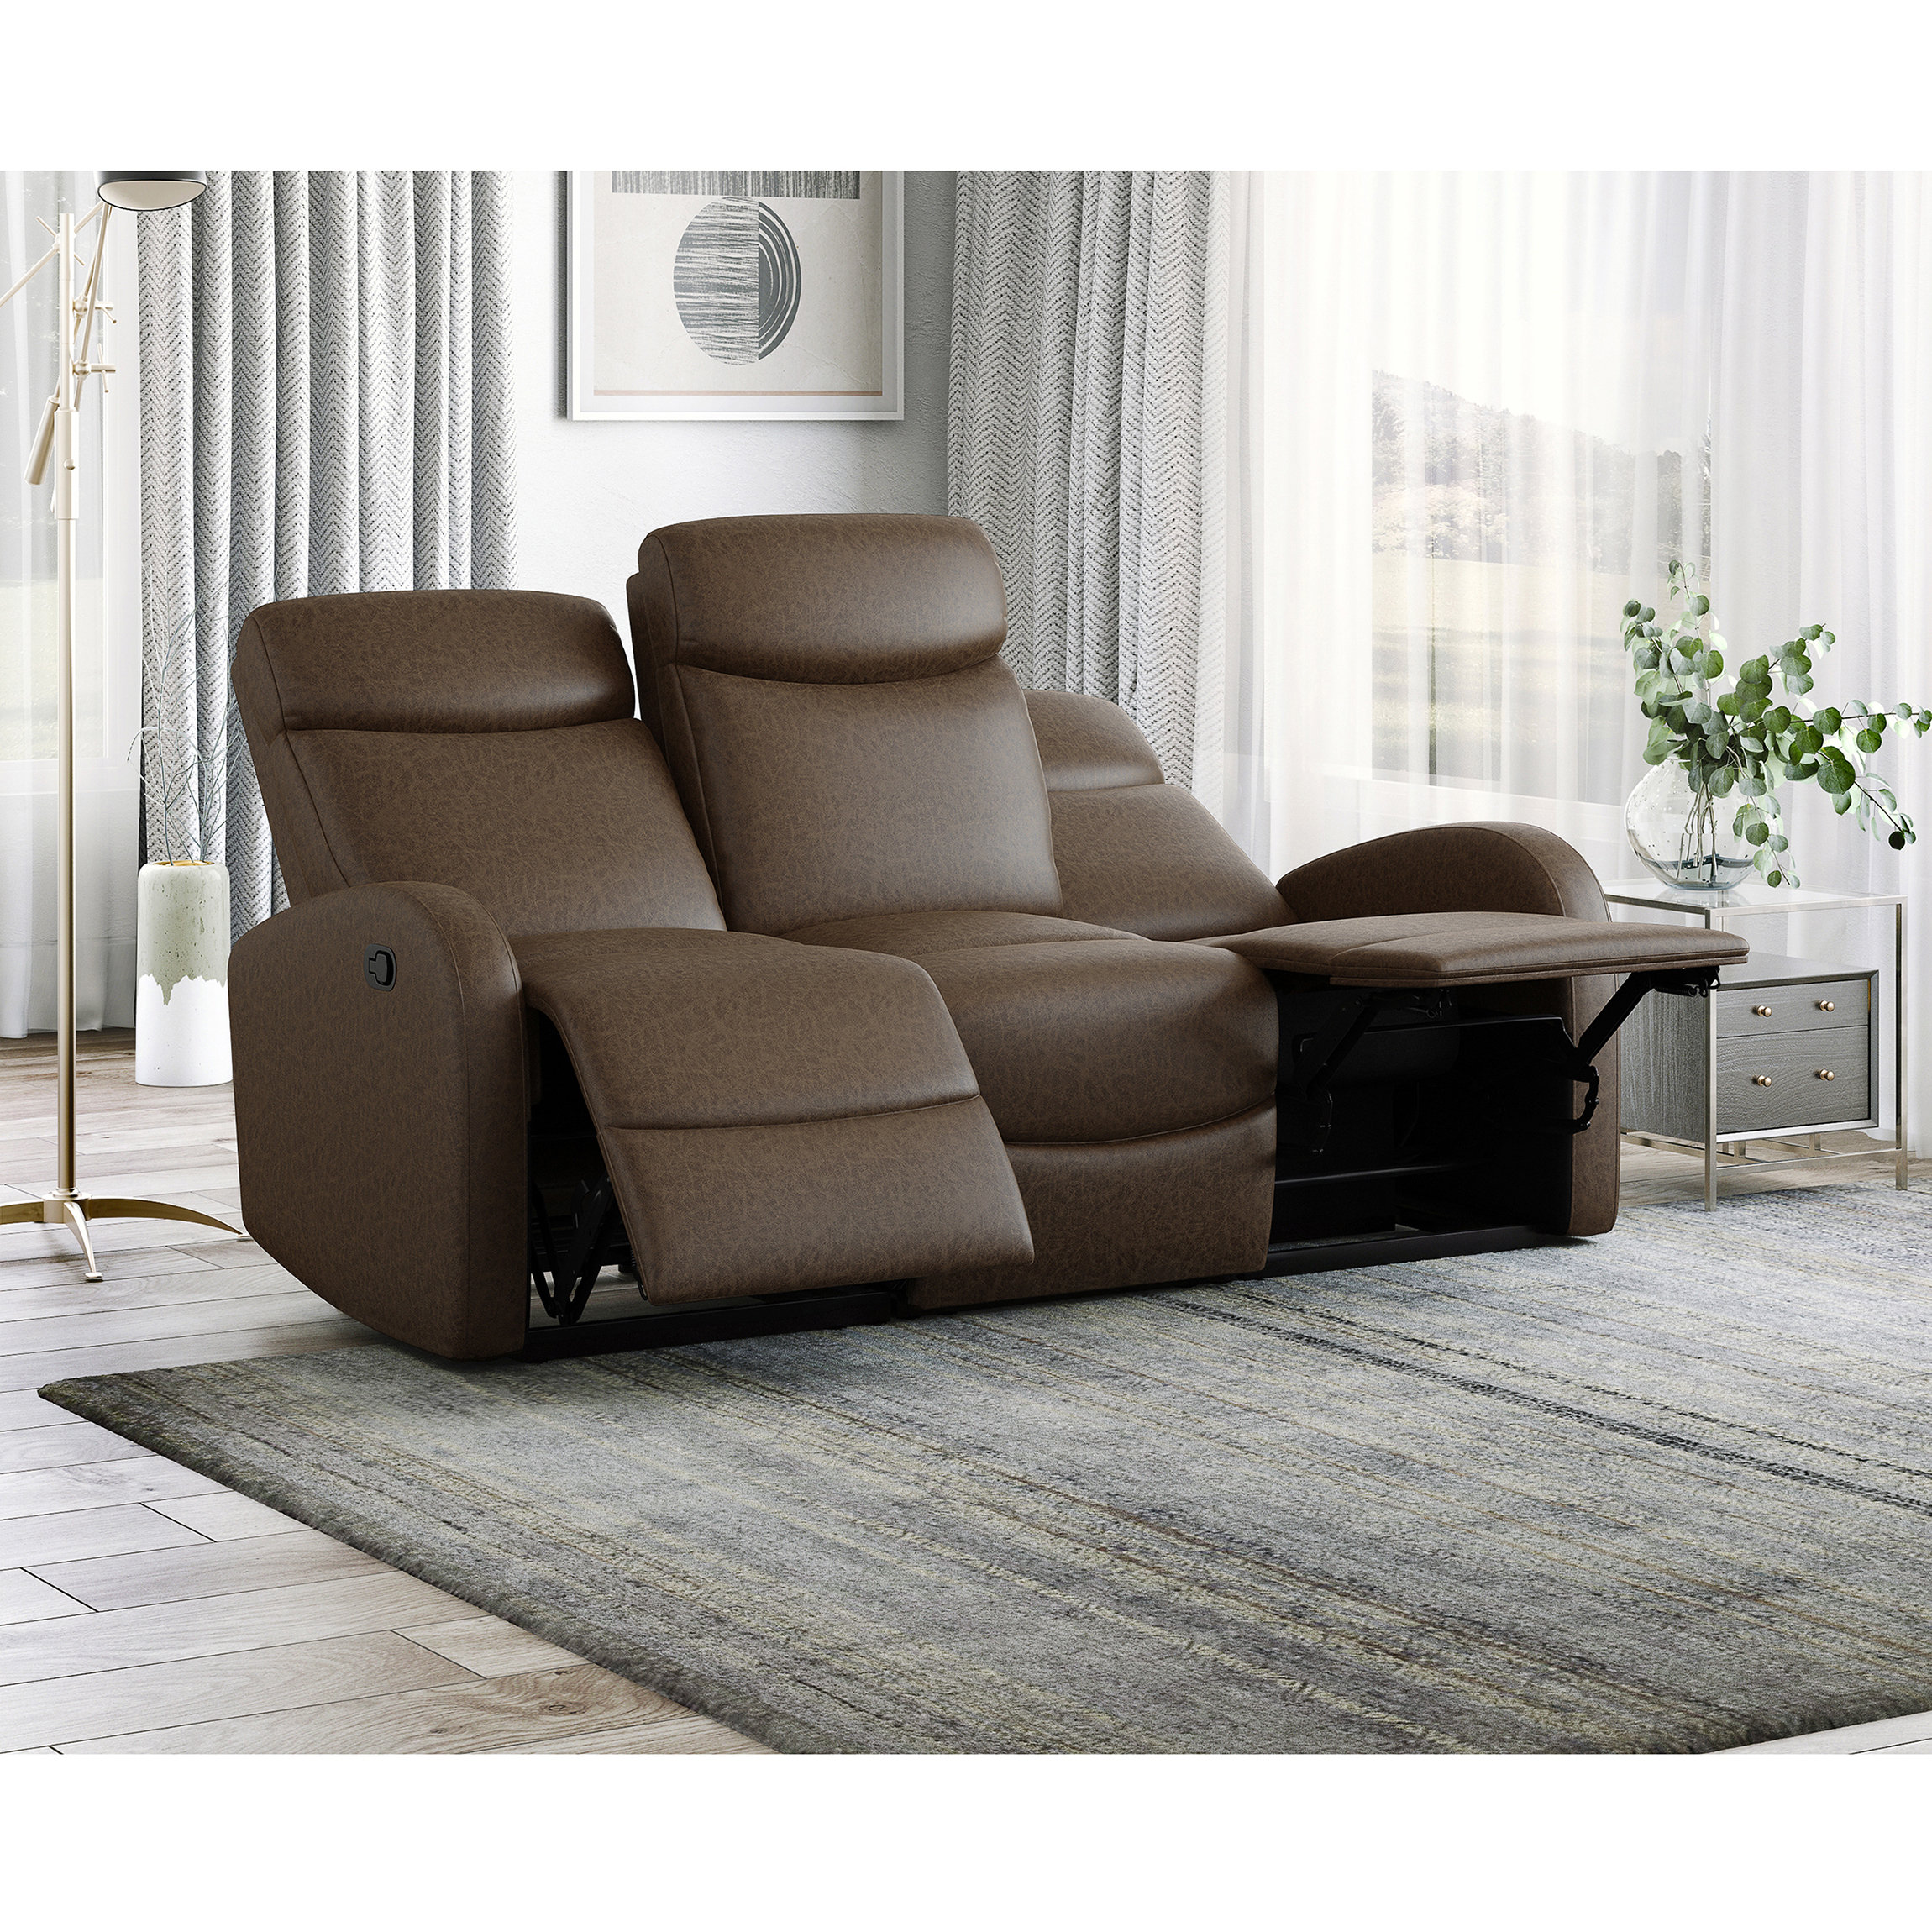 https://assets.wfcdn.com/im/00868685/compr-r85/2039/203921022/alecander-70-upholstered-reclining-sofa.jpg